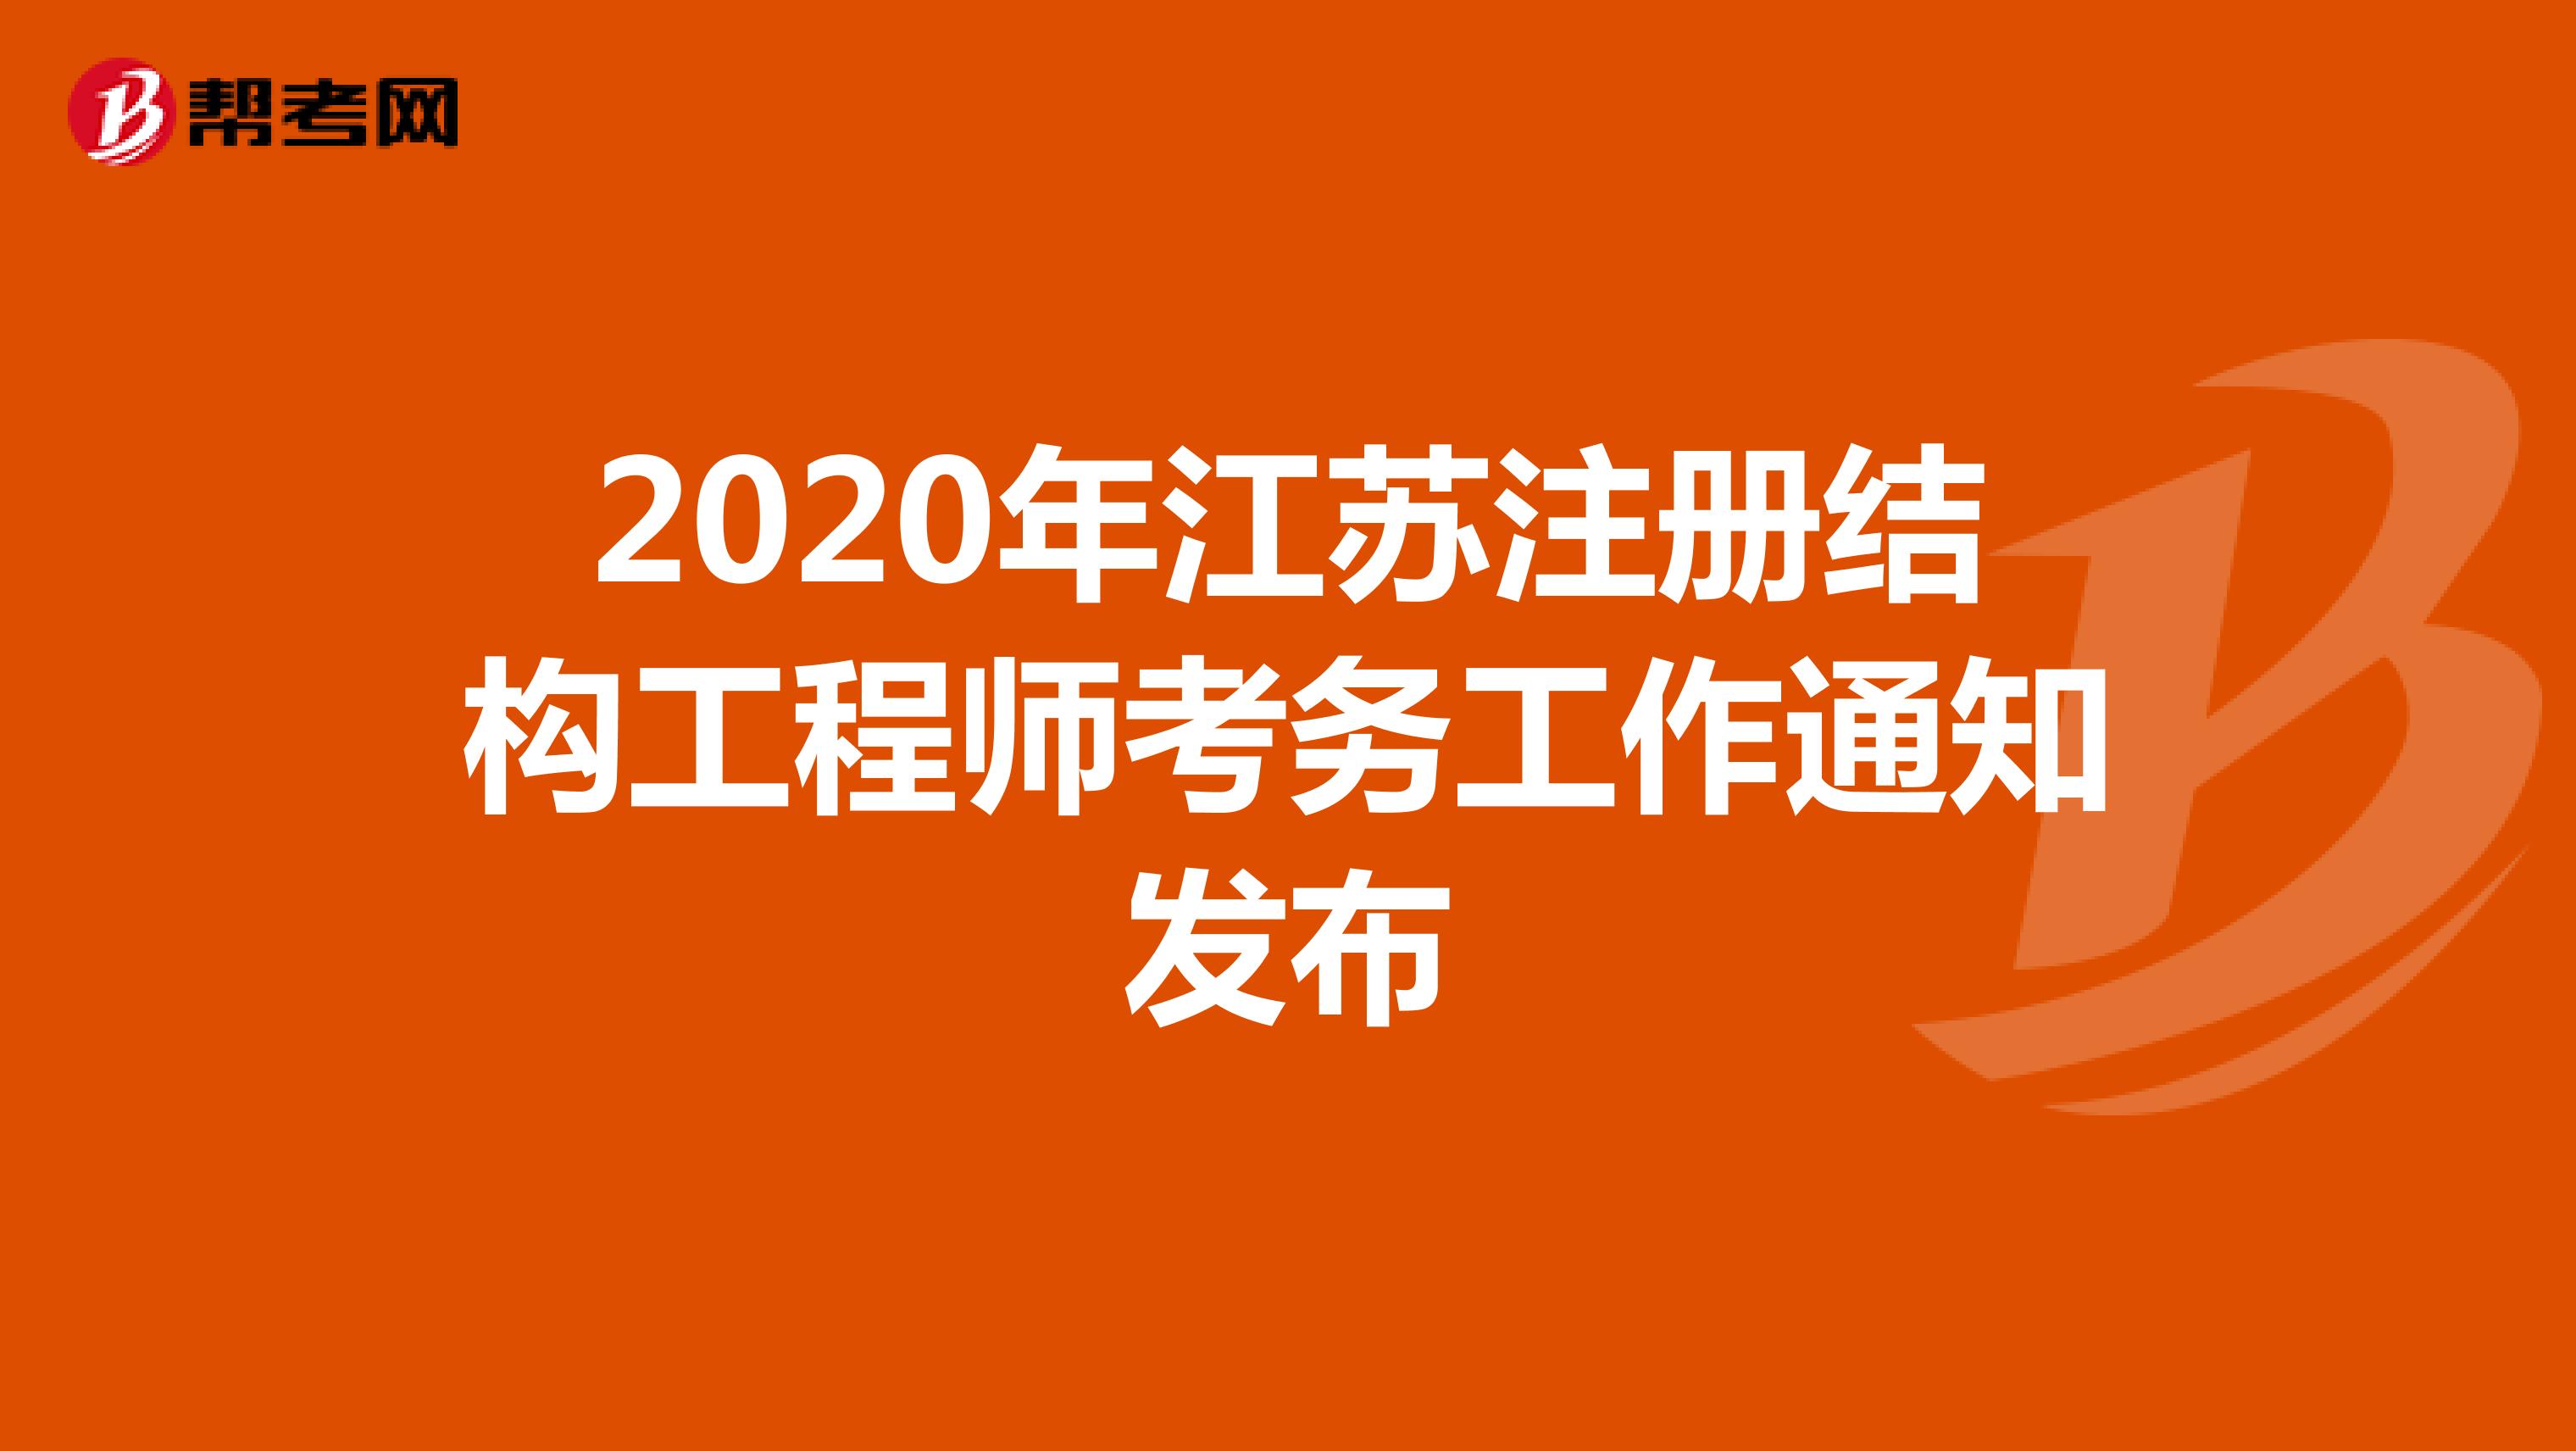 2020年江苏注册结构工程师考务工作通知发布